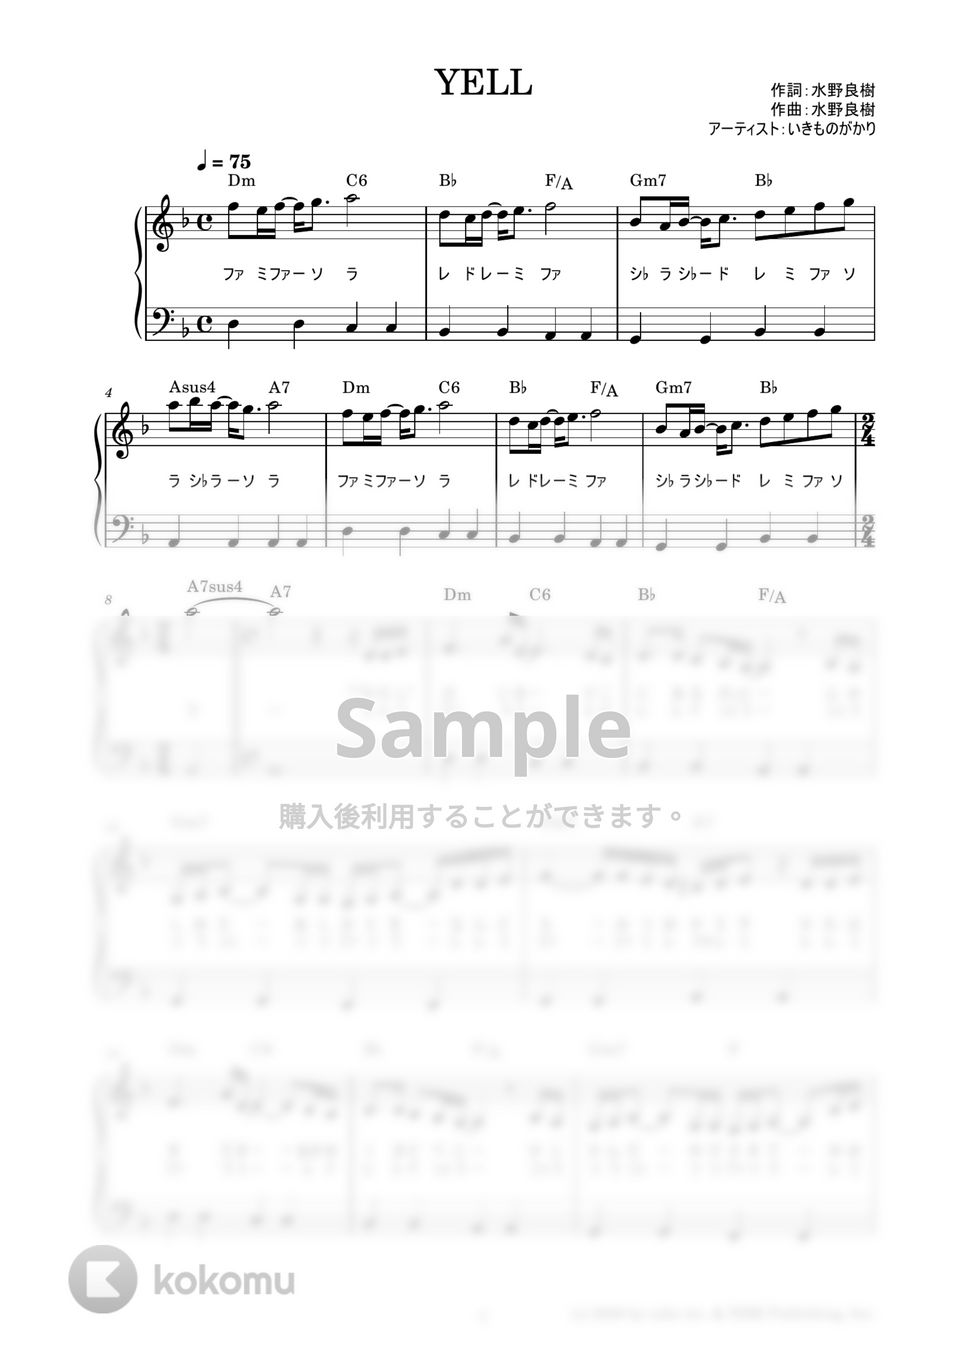 いきものがかり - YELL (かんたん / 歌詞付き / ドレミ付き / 初心者) by piano.tokyo